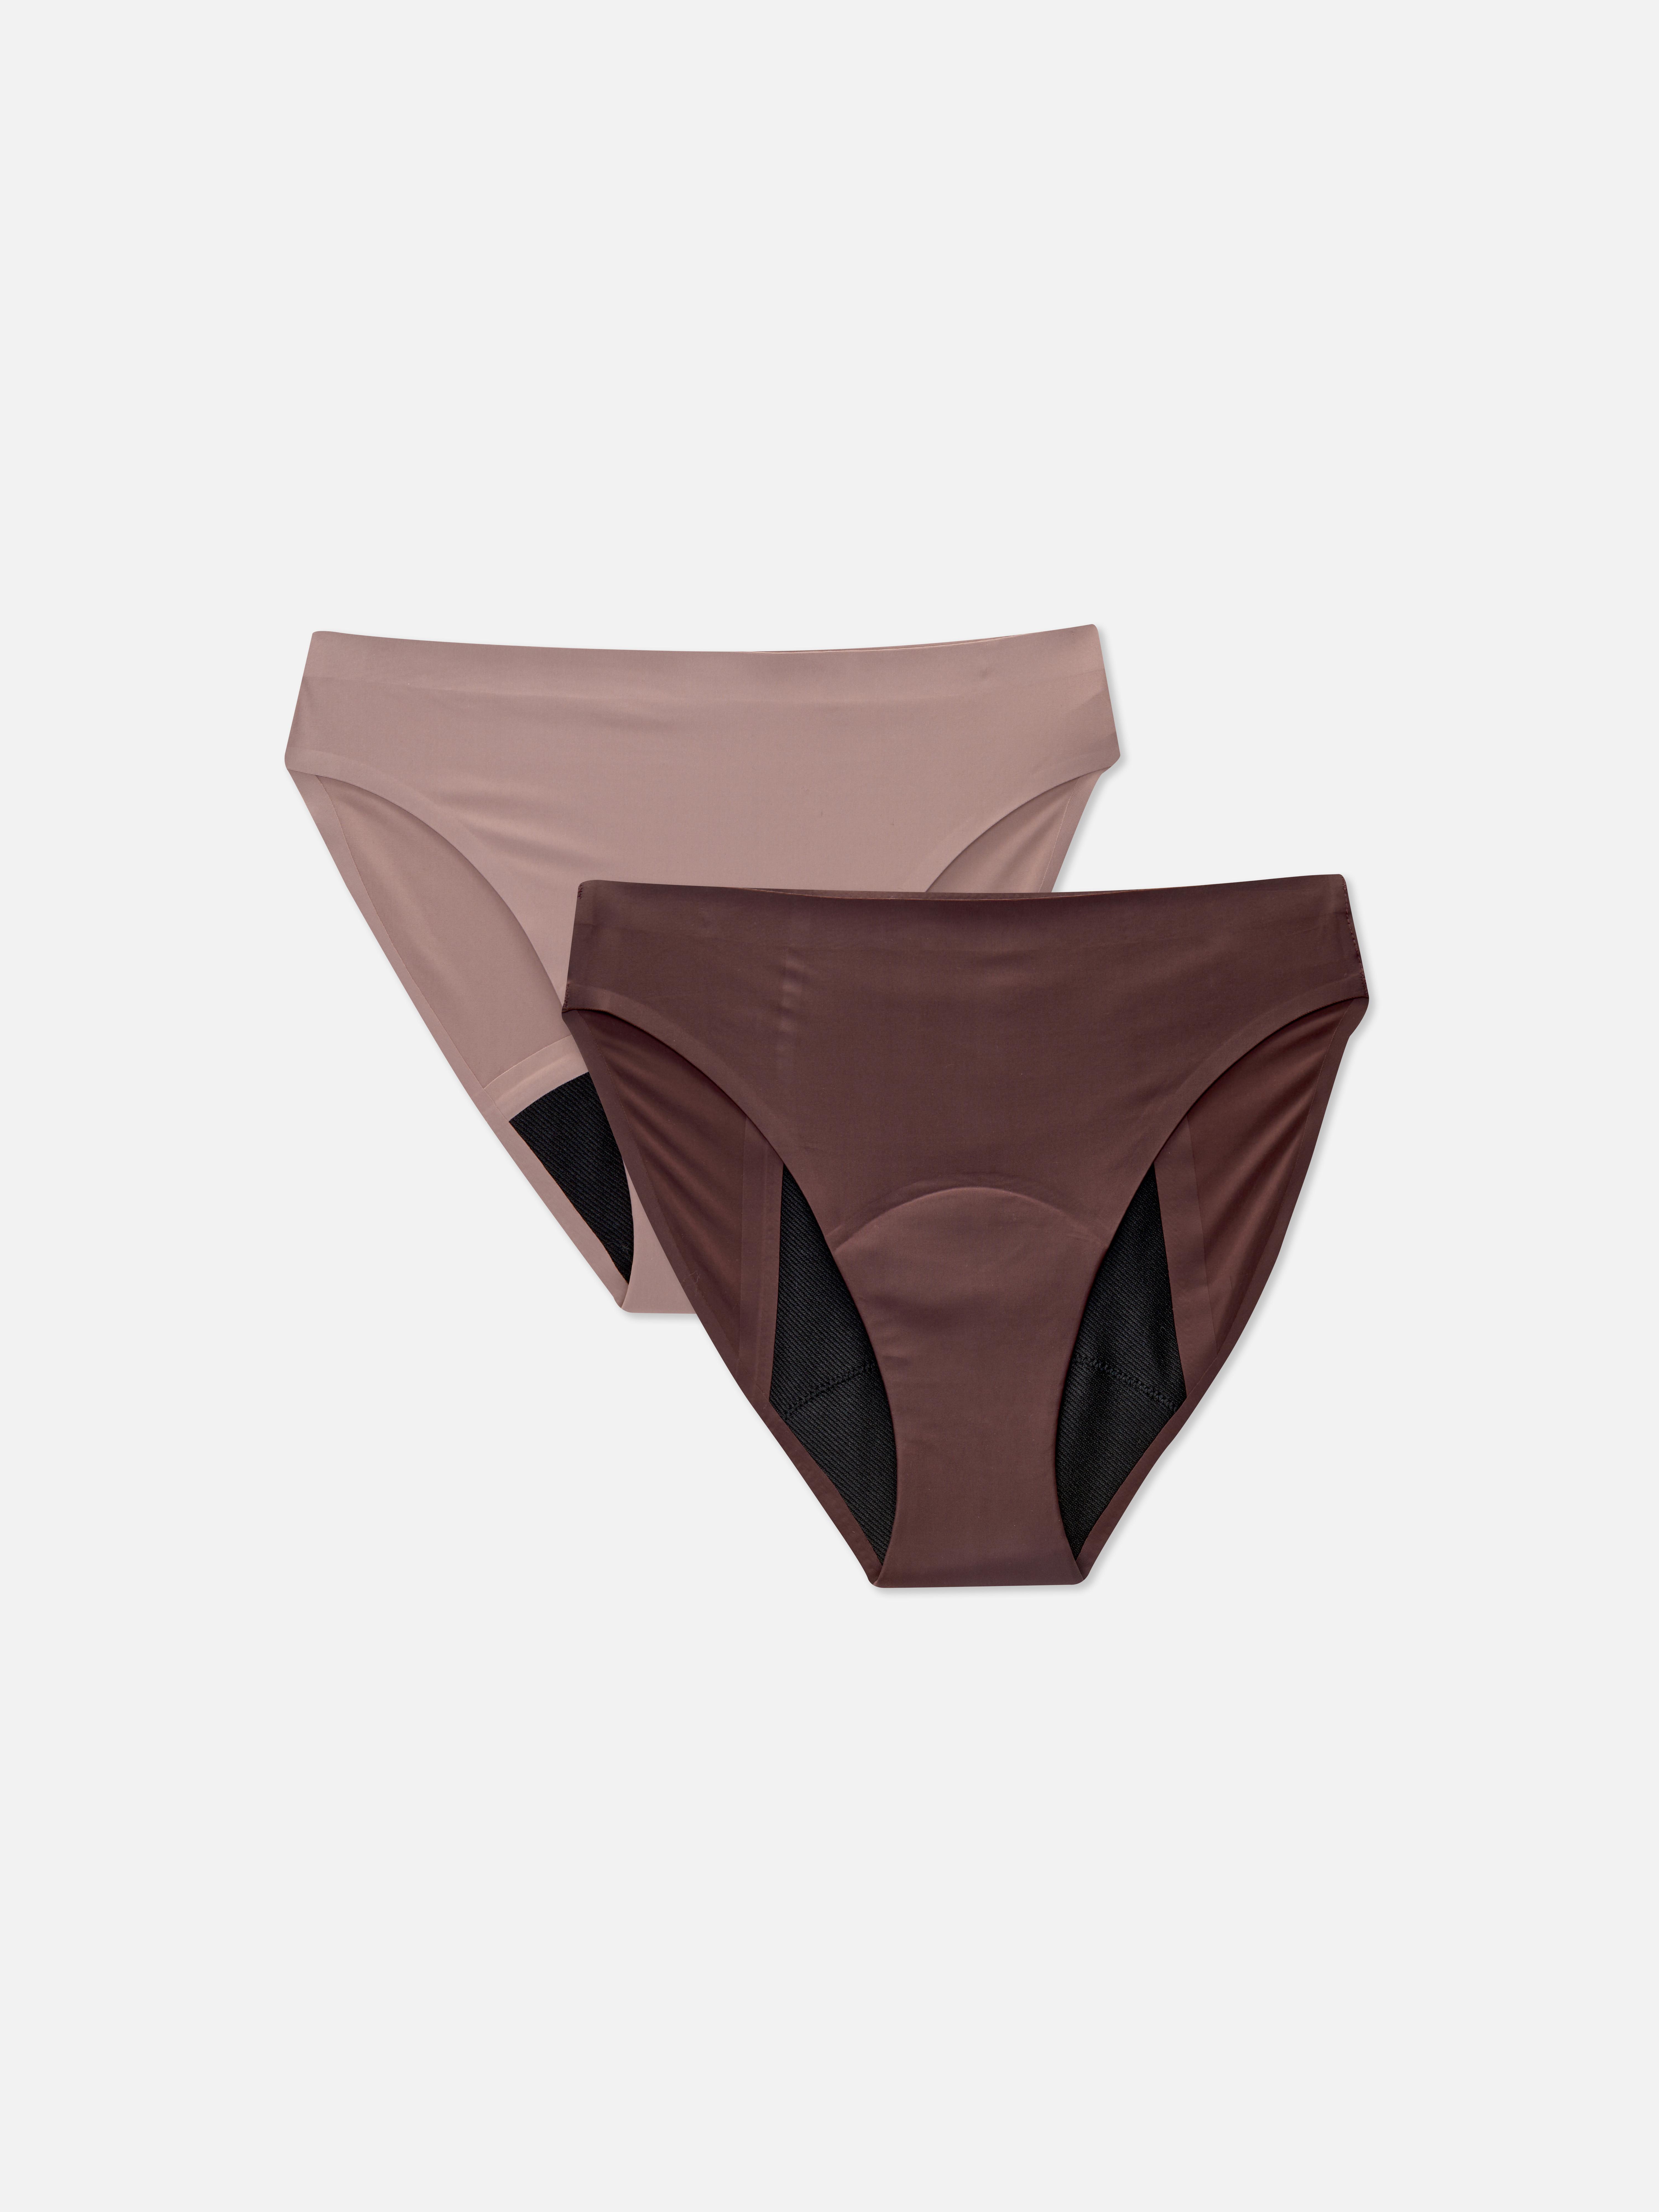 Primark Seam Free Full Briefs Knickers Ladies Women Underwear 3 Pack